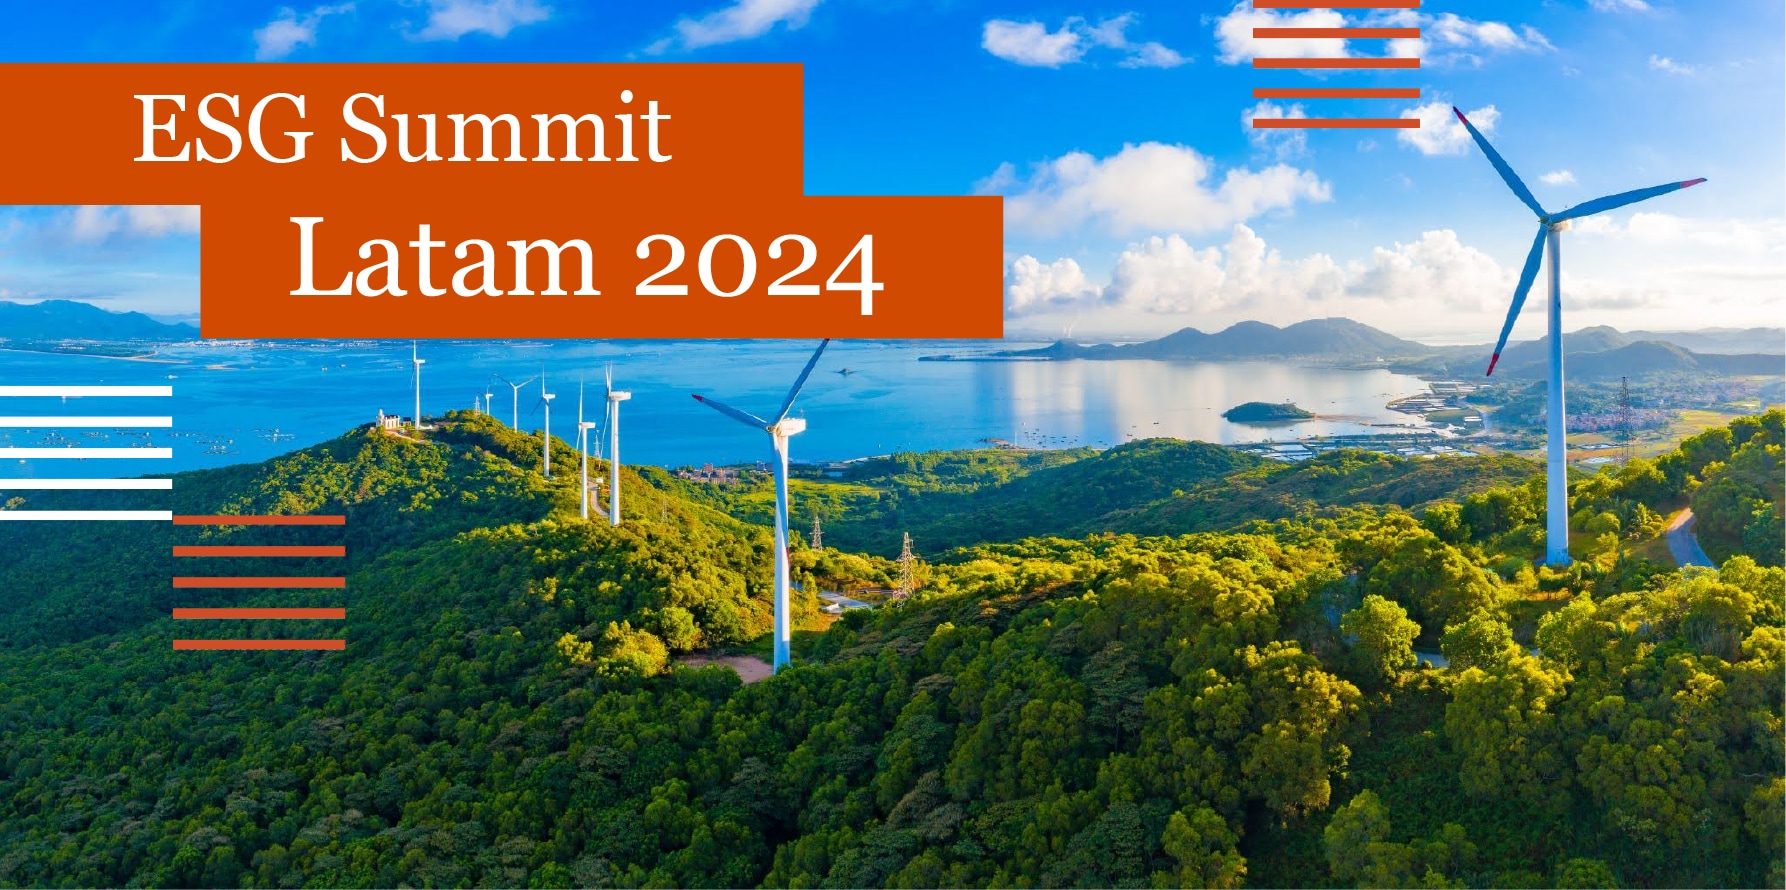 ESG Summit Latam 2024